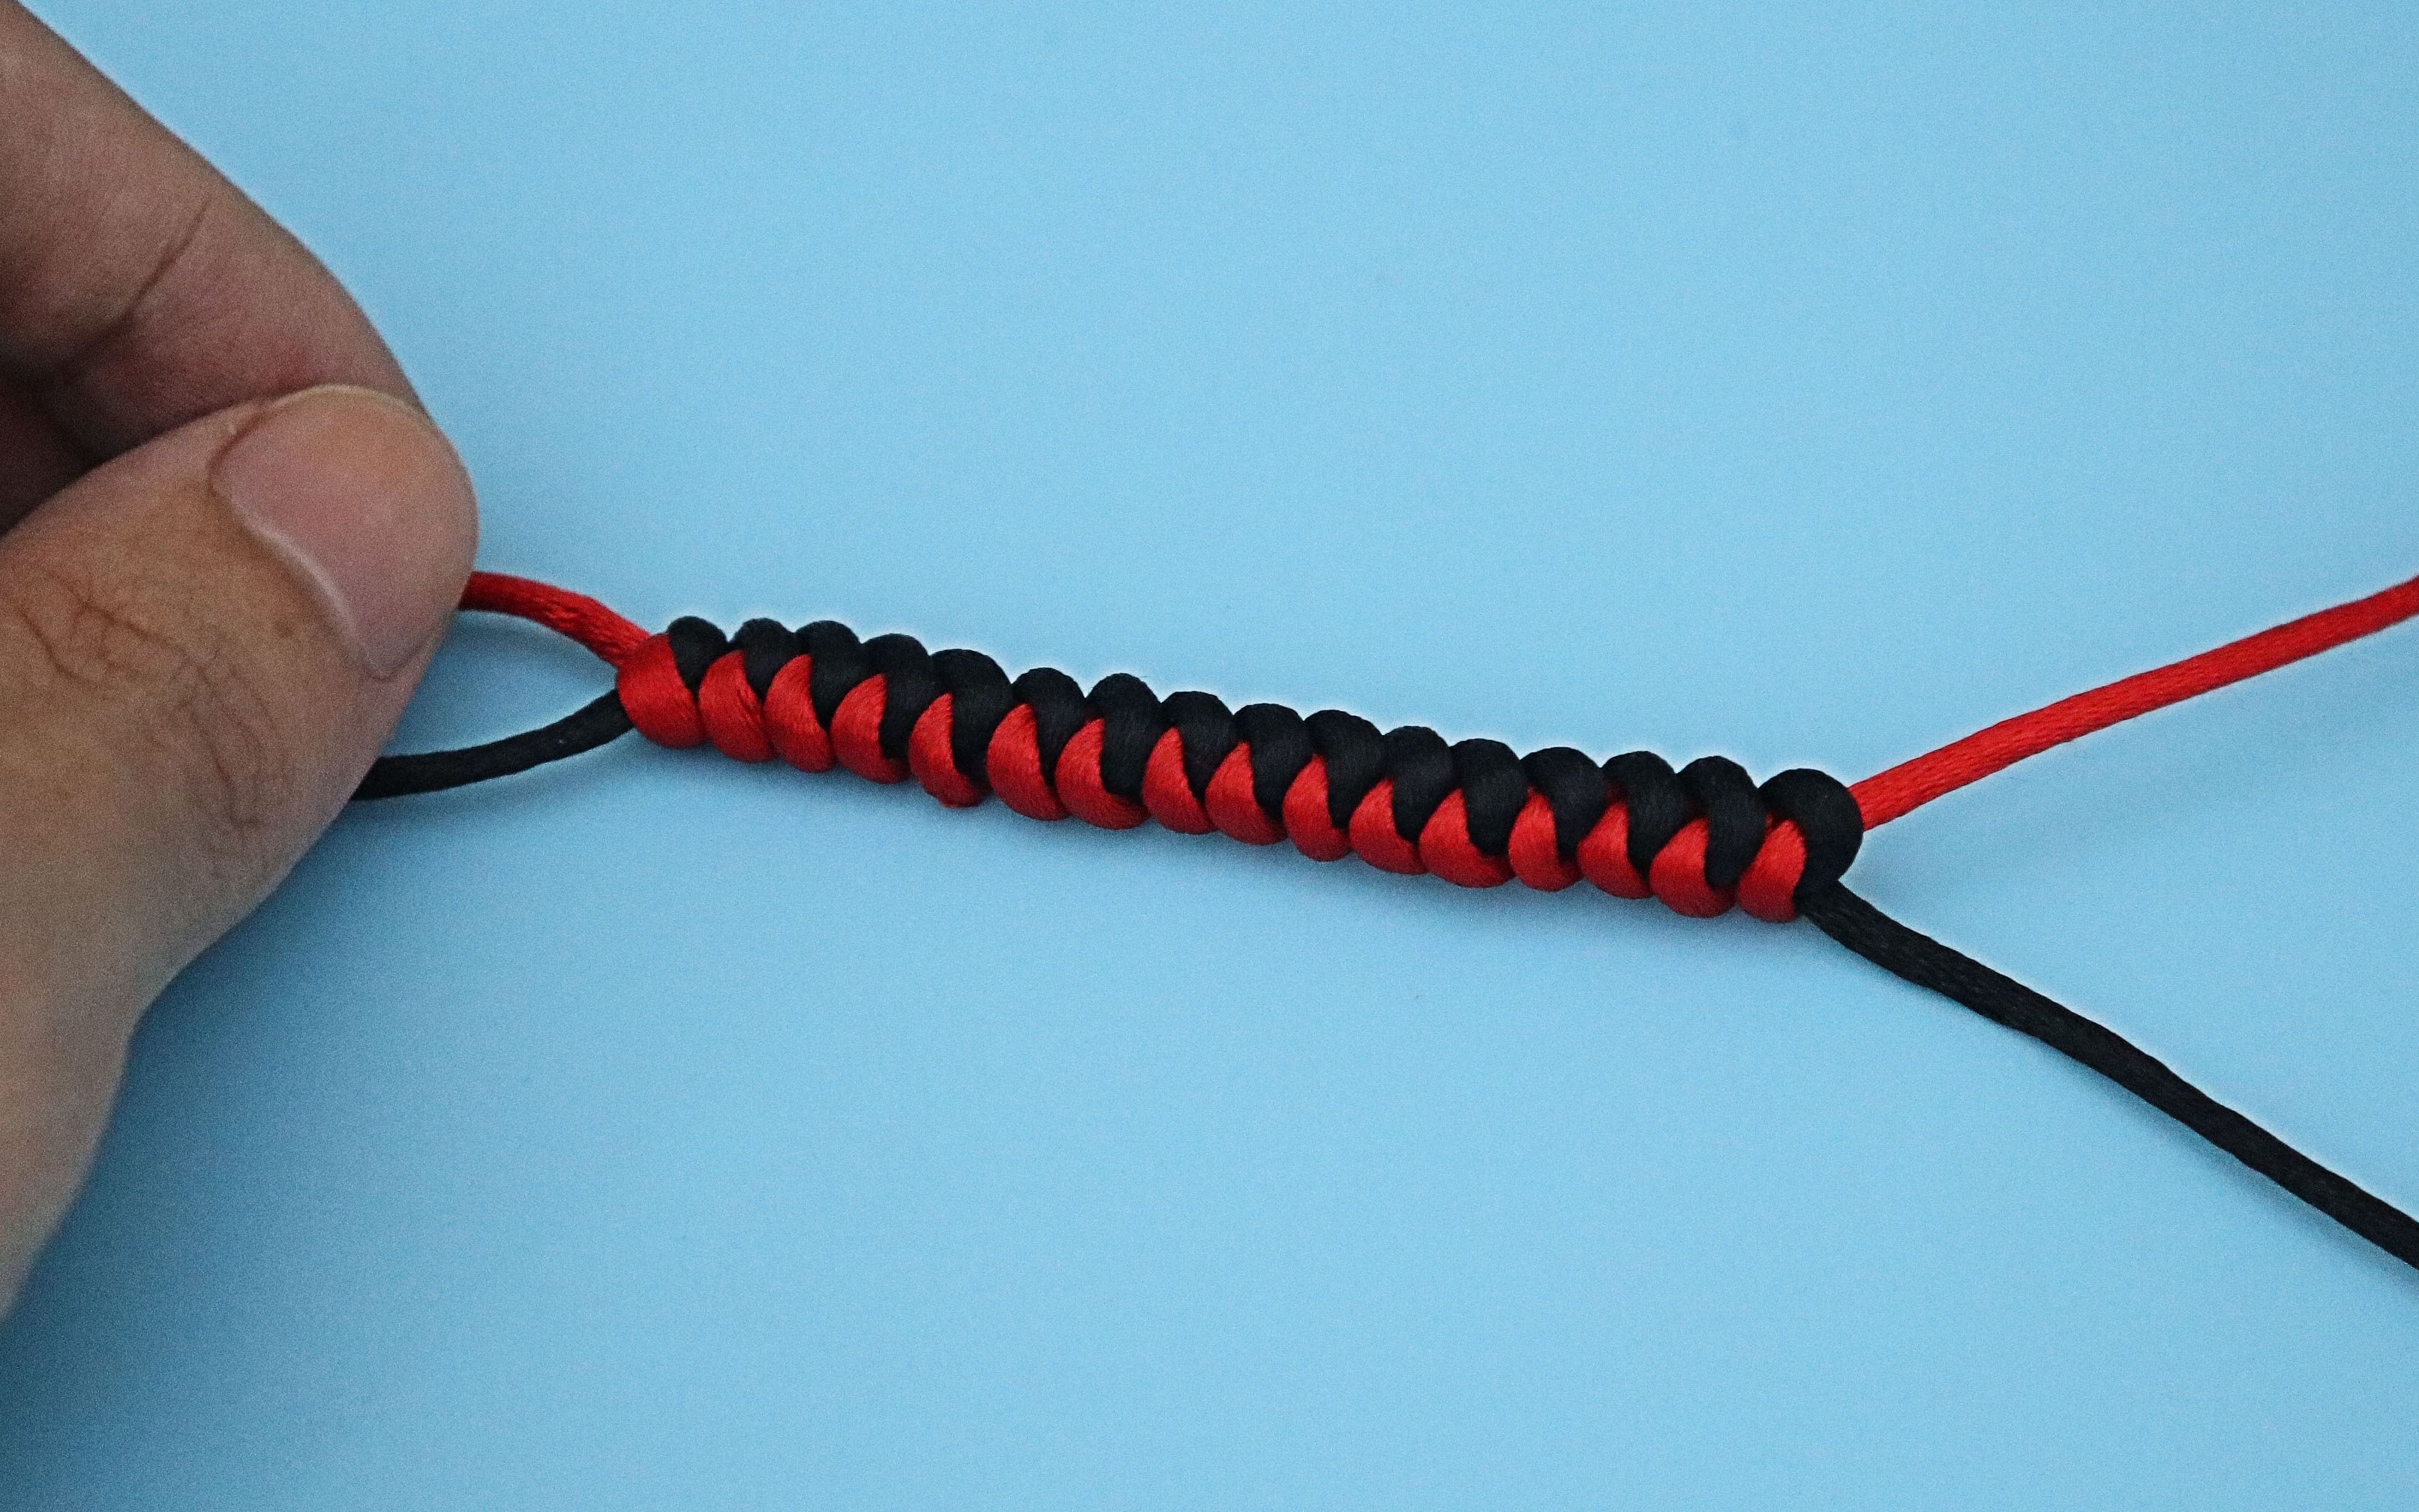 中国结论坛 《绳结》蛇结，手绳中常见的绳结，学会了可以编织漂亮的手绳！ 二根绳子各种编法图解,手绳,一根绳子编蛇结,八股手绳收尾打结图解,蛇结手绳的编织方法 视频教程区 163613g33mzf483cq48xi4